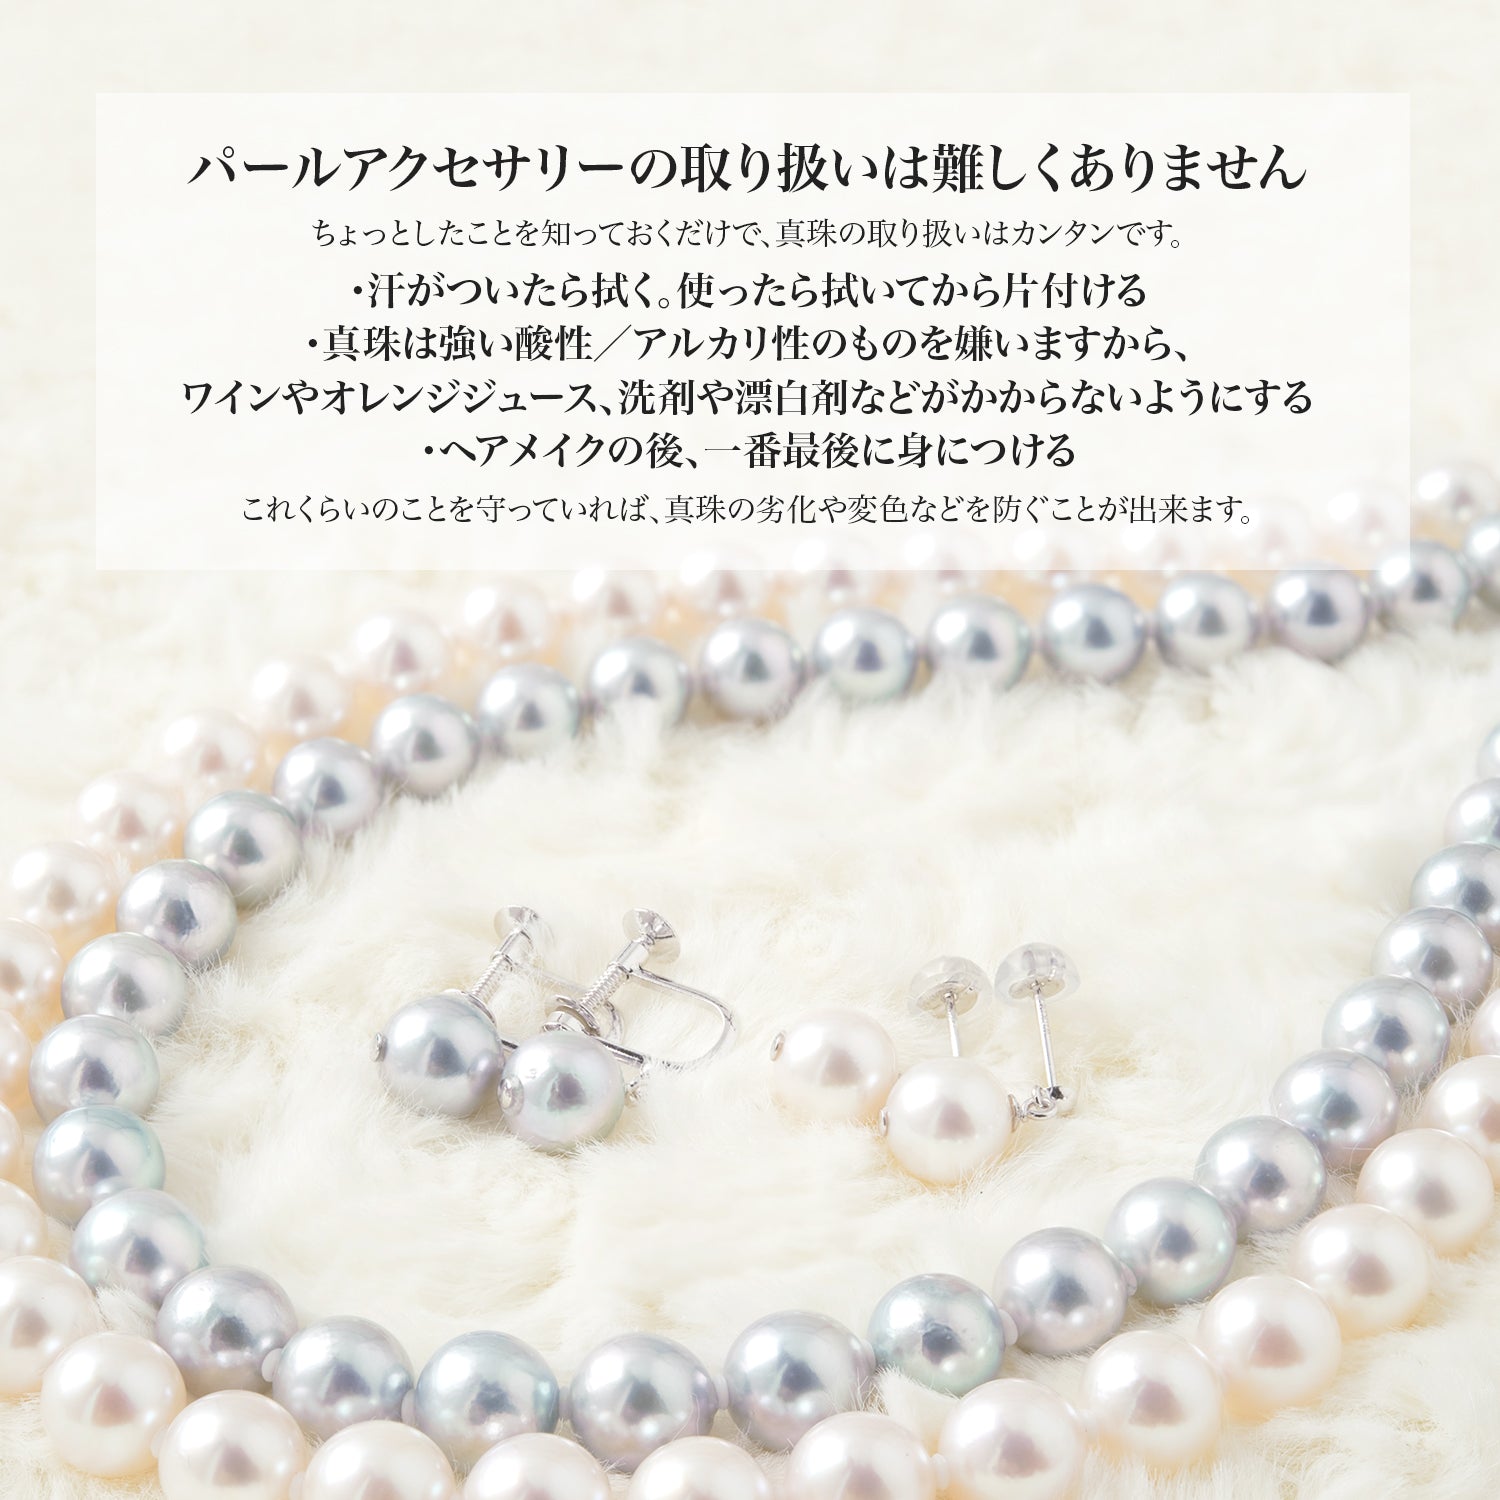 [天然白色] [花珠珍珠] 无色 Akoya 珍珠正装项链 2 件套 [8.0-8.5 毫米]（耳环/耳环）Akoya 珍珠真品证书存储盒包含仪式